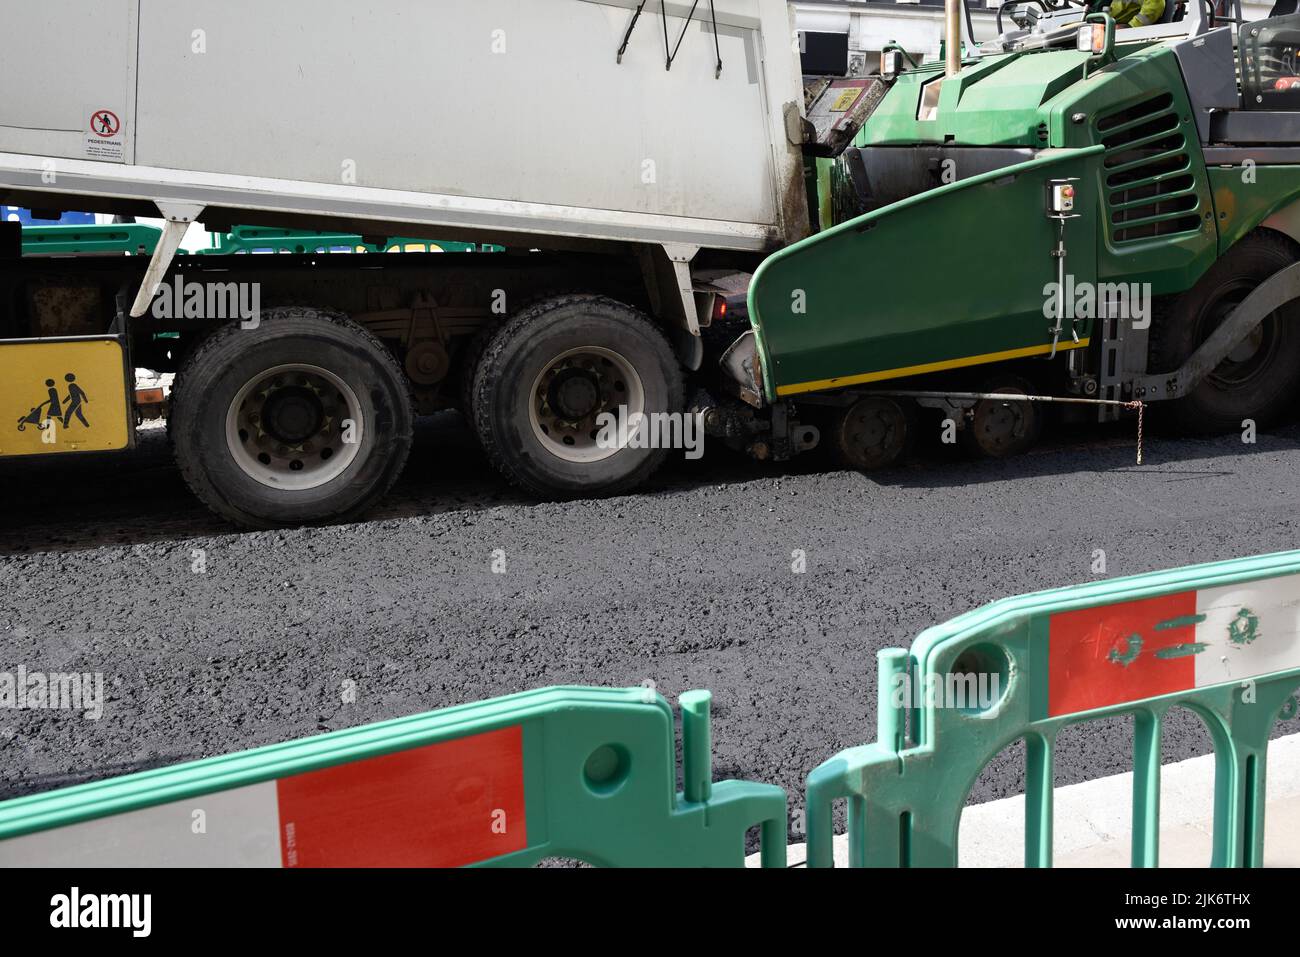 Máquina pesada especializada utilizada para pavimentar carreteras y pavimentar asfalto Foto de stock